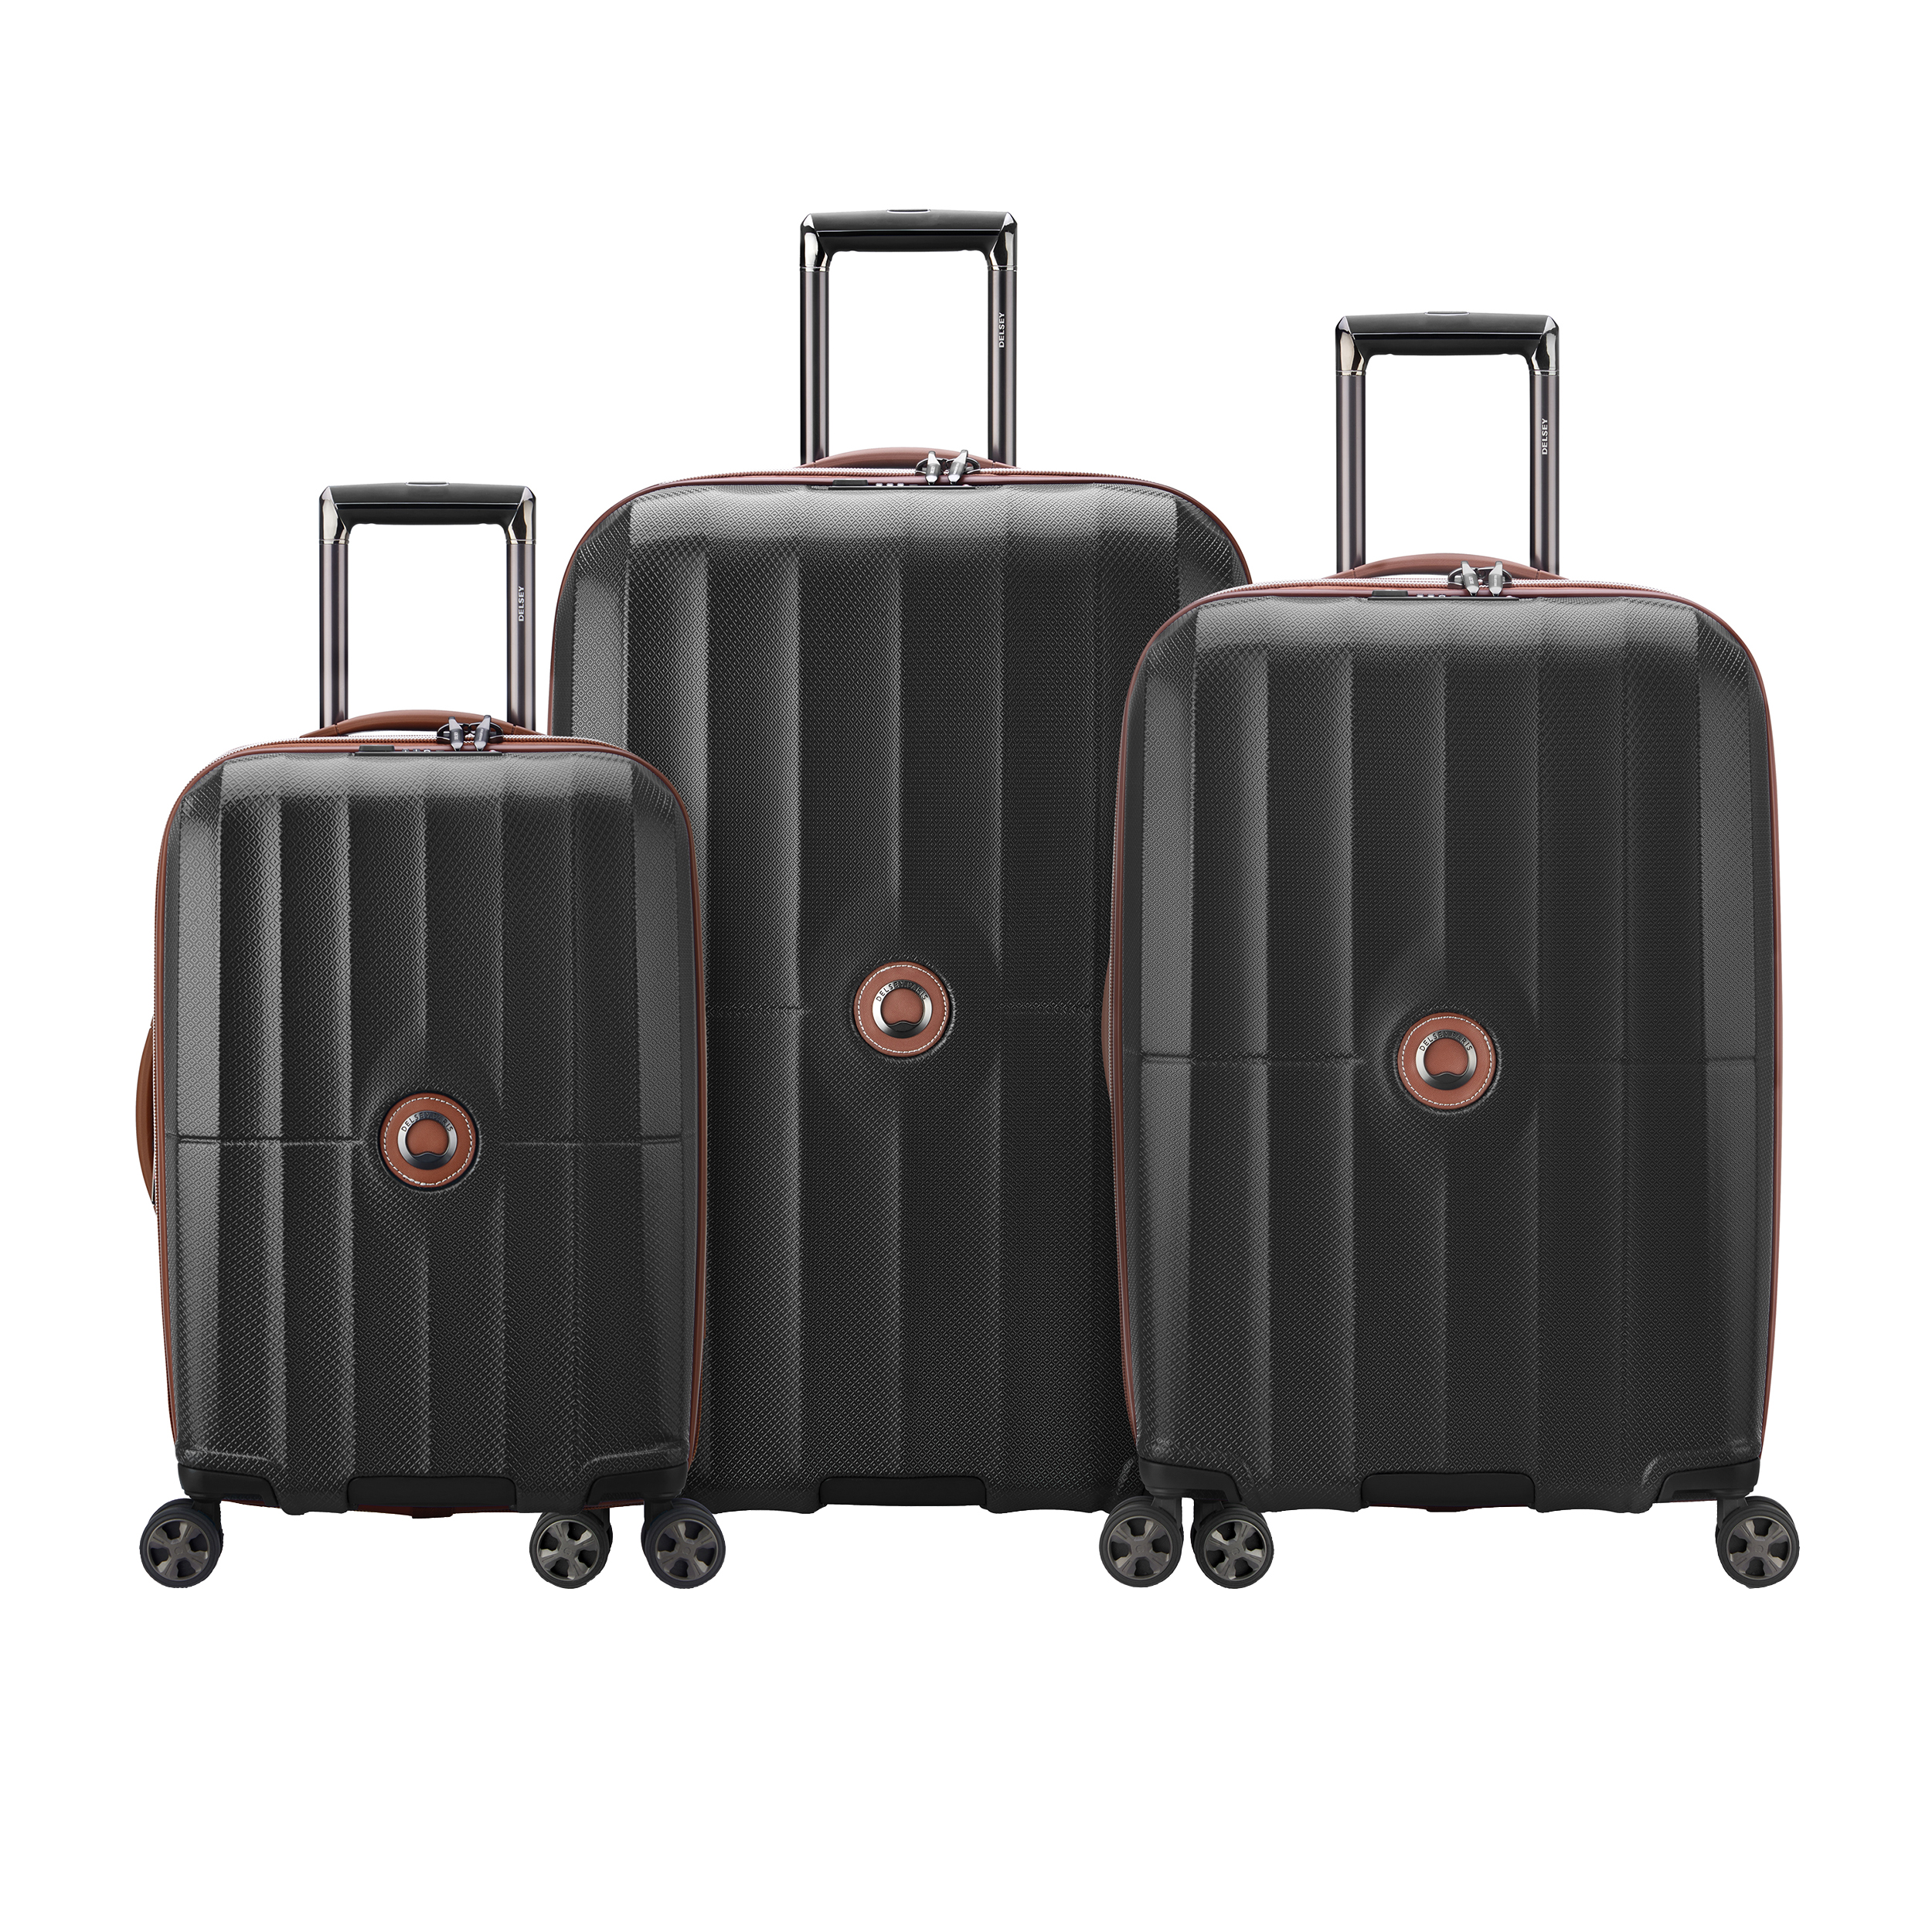 نکته خرید - قیمت روز مجموعه 3 عددی چمدان دلسی مدل ST TROPEZ کد 2087980 خرید